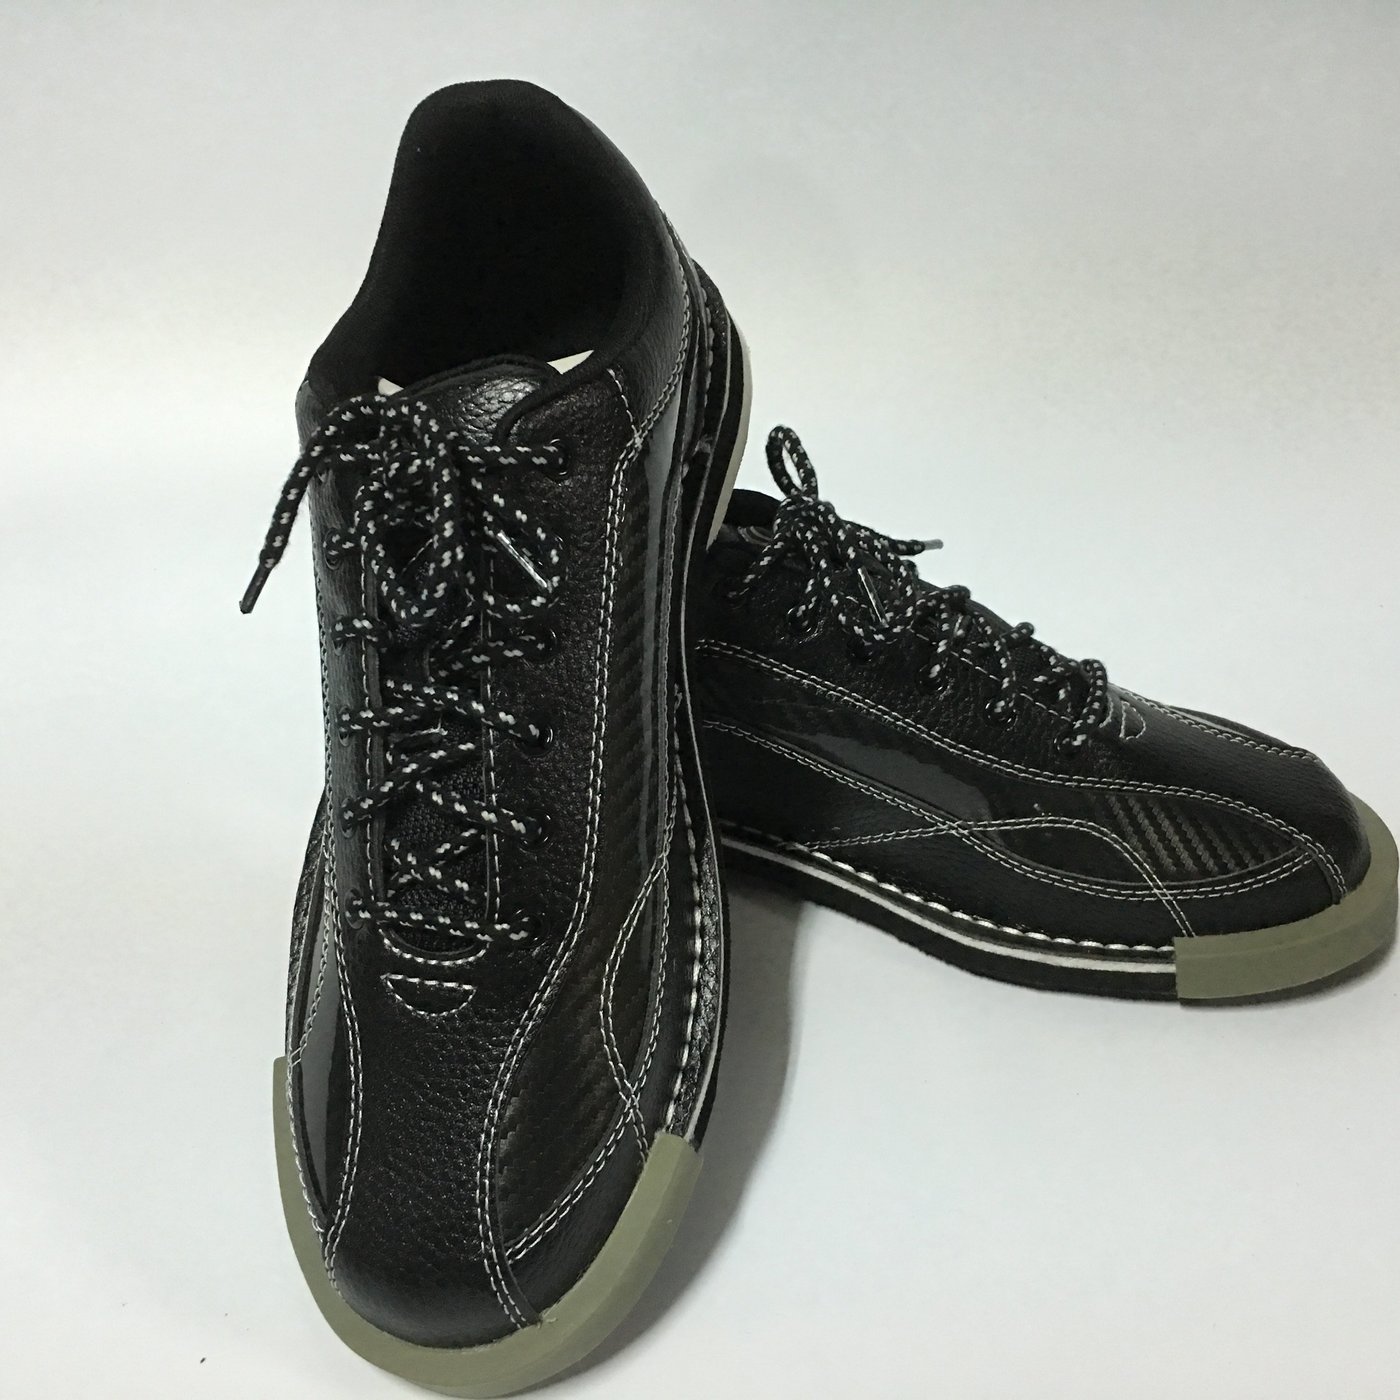 日本進口ABS品牌S-570保齡球鞋，雙面可換底（左右手通用） | Yahoo奇摩拍賣